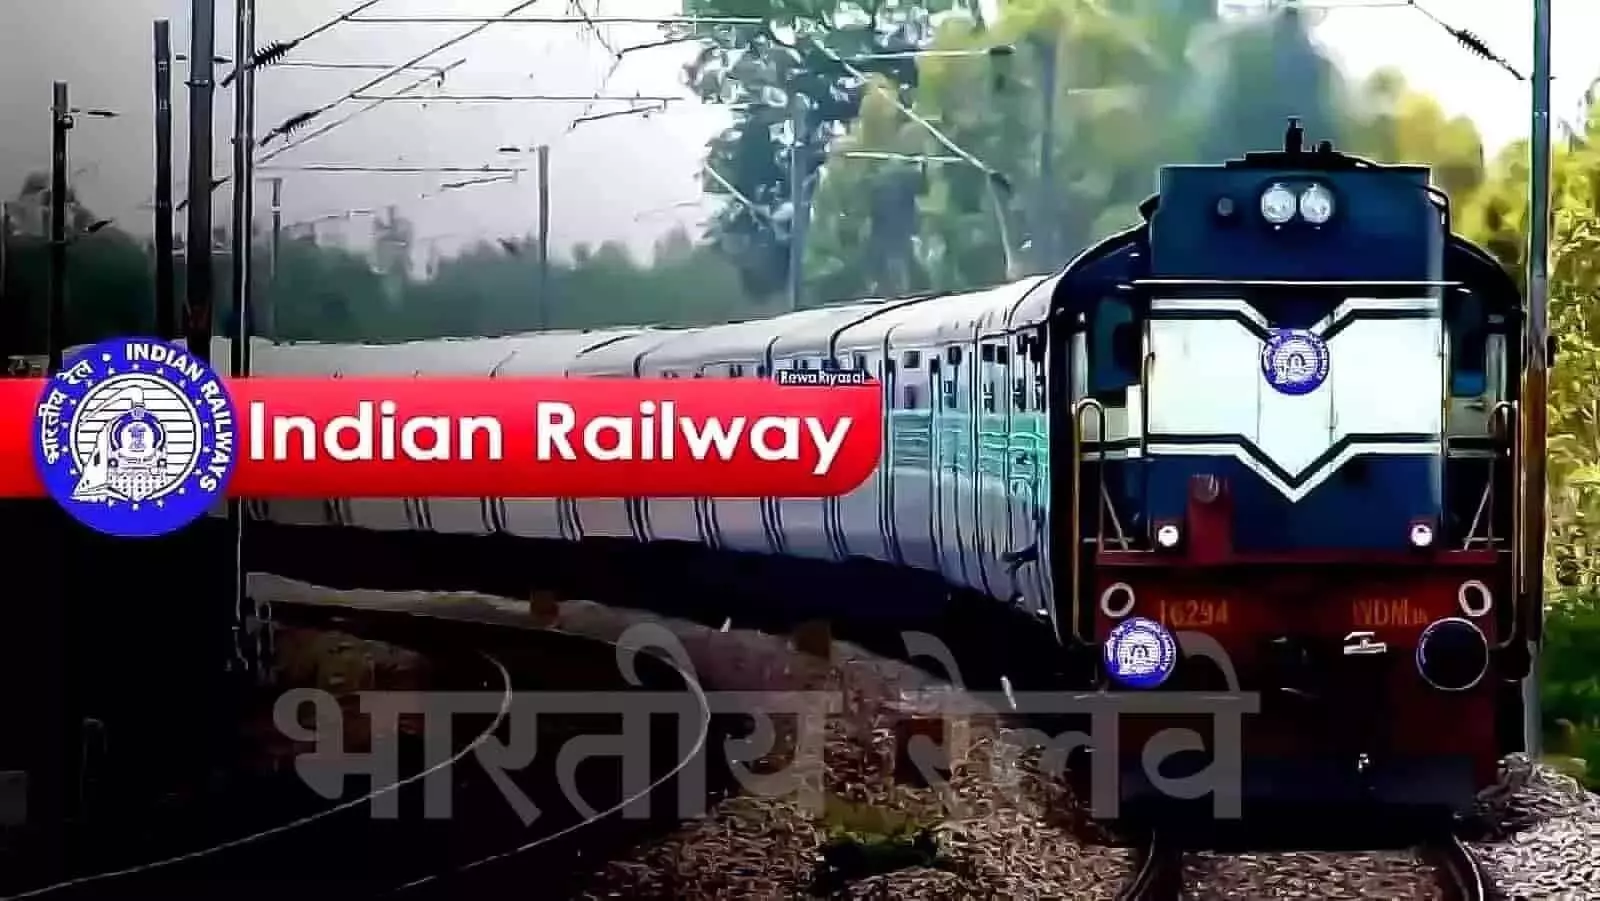 गुड न्यूज़! जबलपुर से इंदौर तक चलेगी डायरेक्ट ट्रेन, नई रेल लाइन का सर्वे कार्य शुरू, हजारो यात्रियों को मिलेगा लाभ